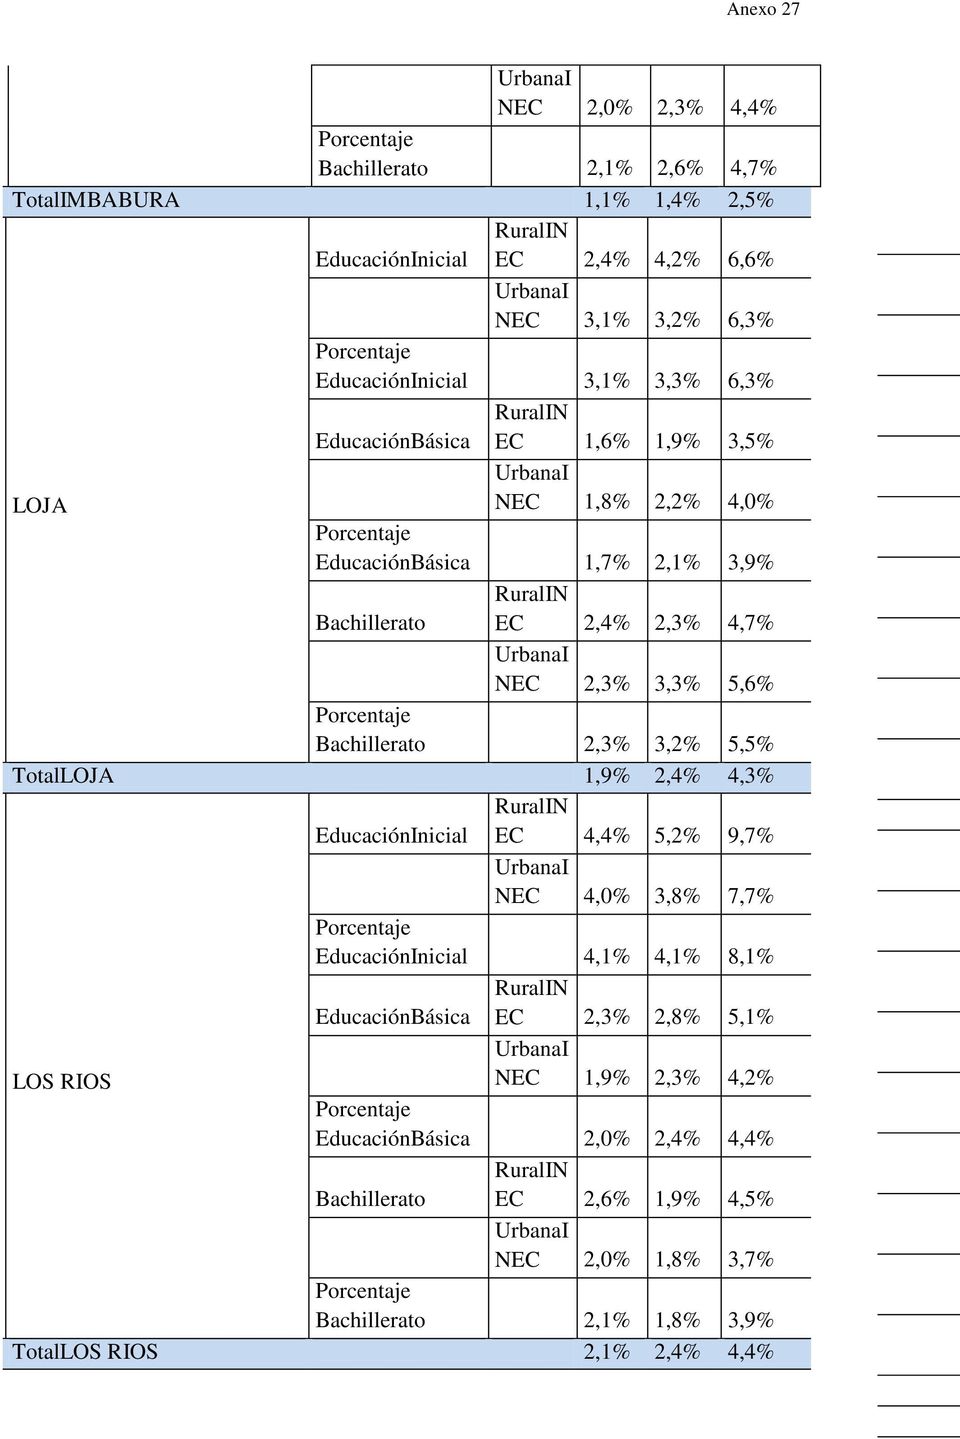 5,5% TotalLOJA 1,9% 2,4% 4,3% EC 4,4% 5,2% 9,7% NEC 4,0% 3,8% 7,7% 4,1% 4,1% 8,1% EC 2,3% 2,8% 5,1% LOS RIOS